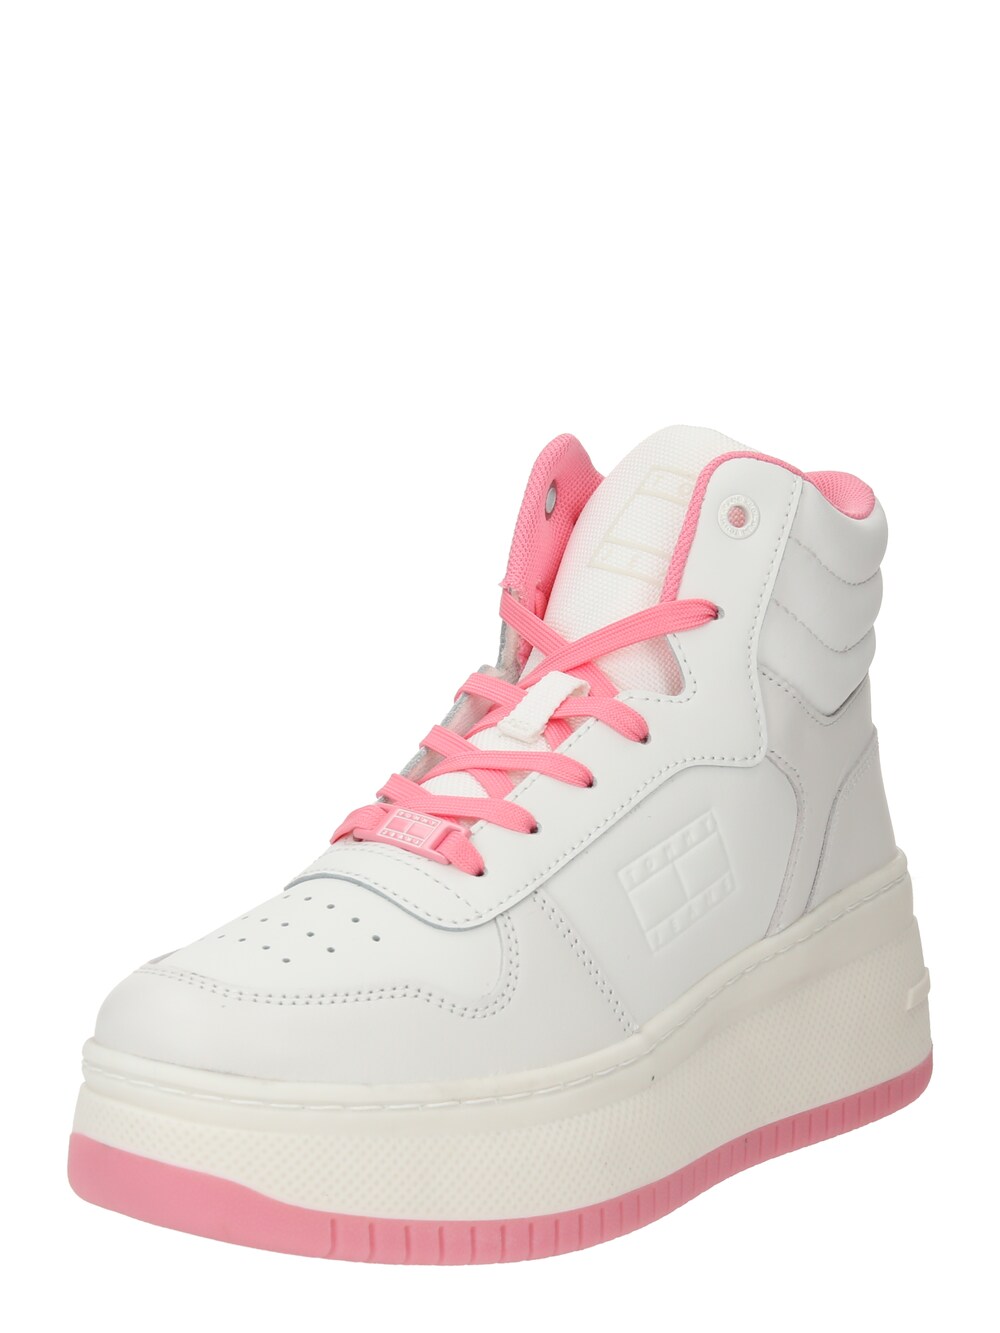 Высокие кроссовки Tommy Hilfiger Retro Basket, белый высокие кроссовки retro basket lace up tommy jeans экрю кукольный розовый